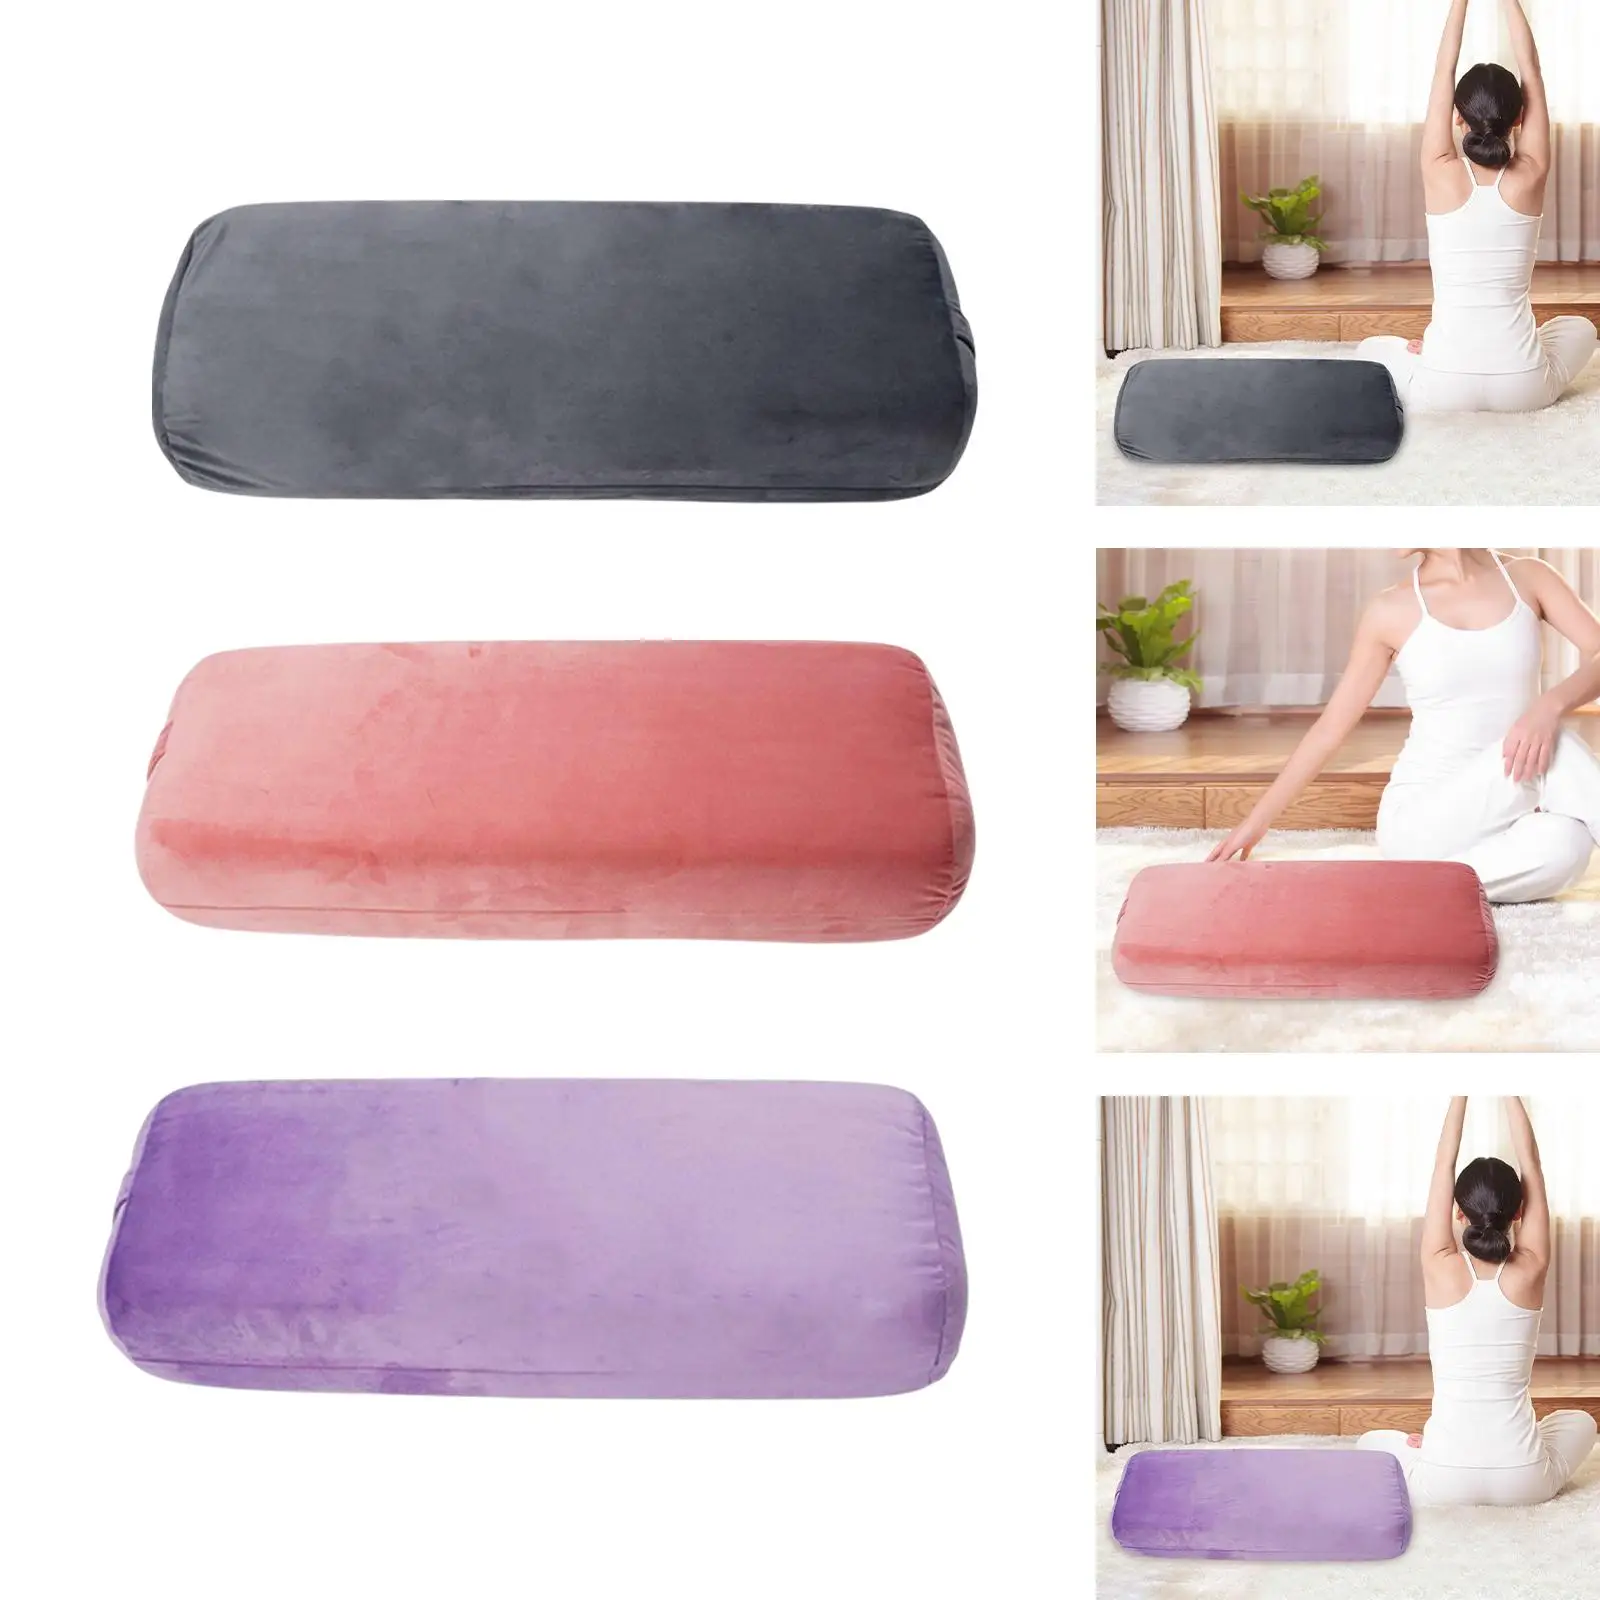 Yoga Bolster Pillow High Elastic Firm Body Yoga Bolster for Soft Support